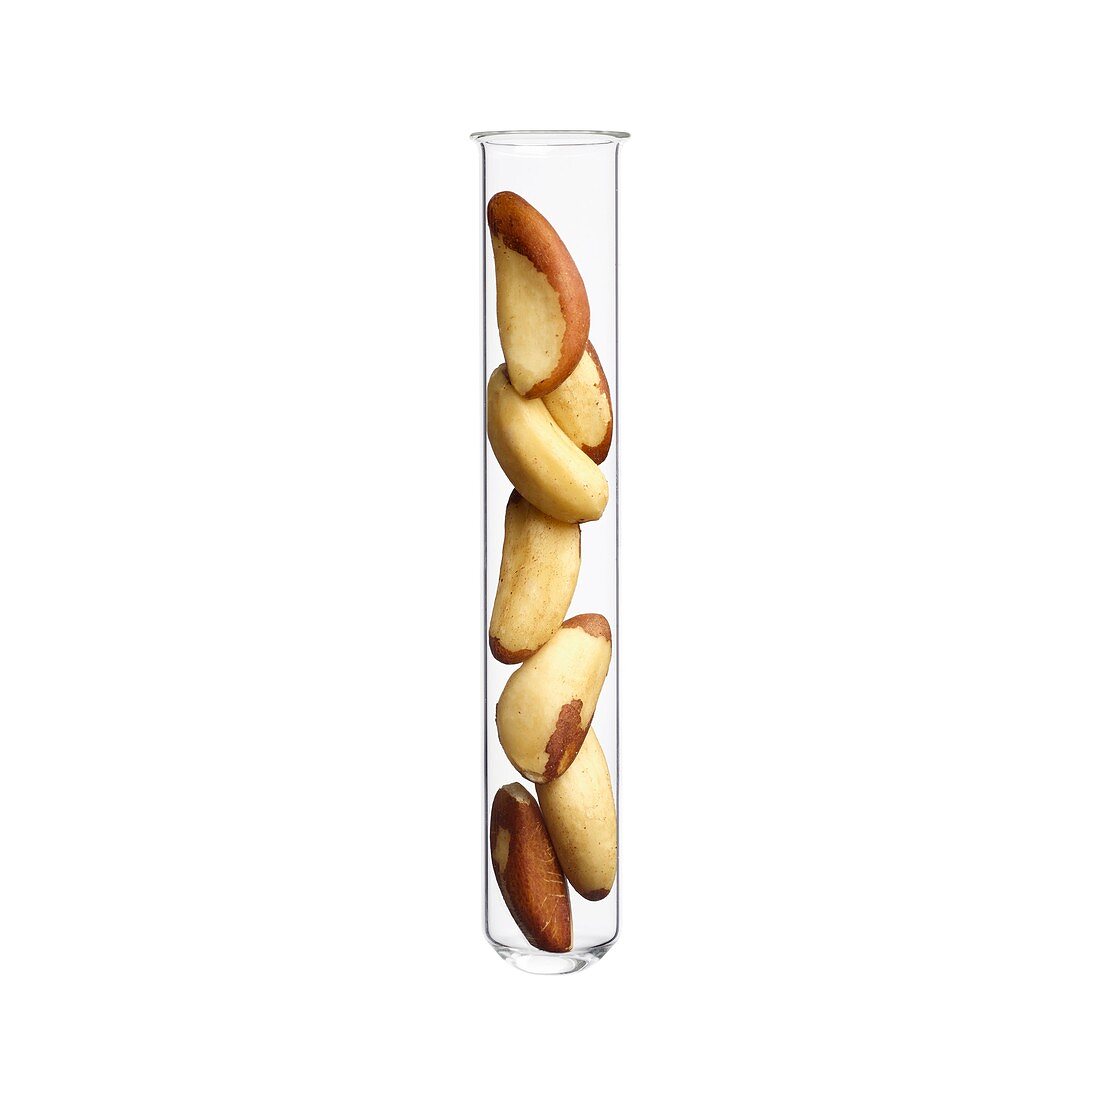 Brazil nuts in test tube